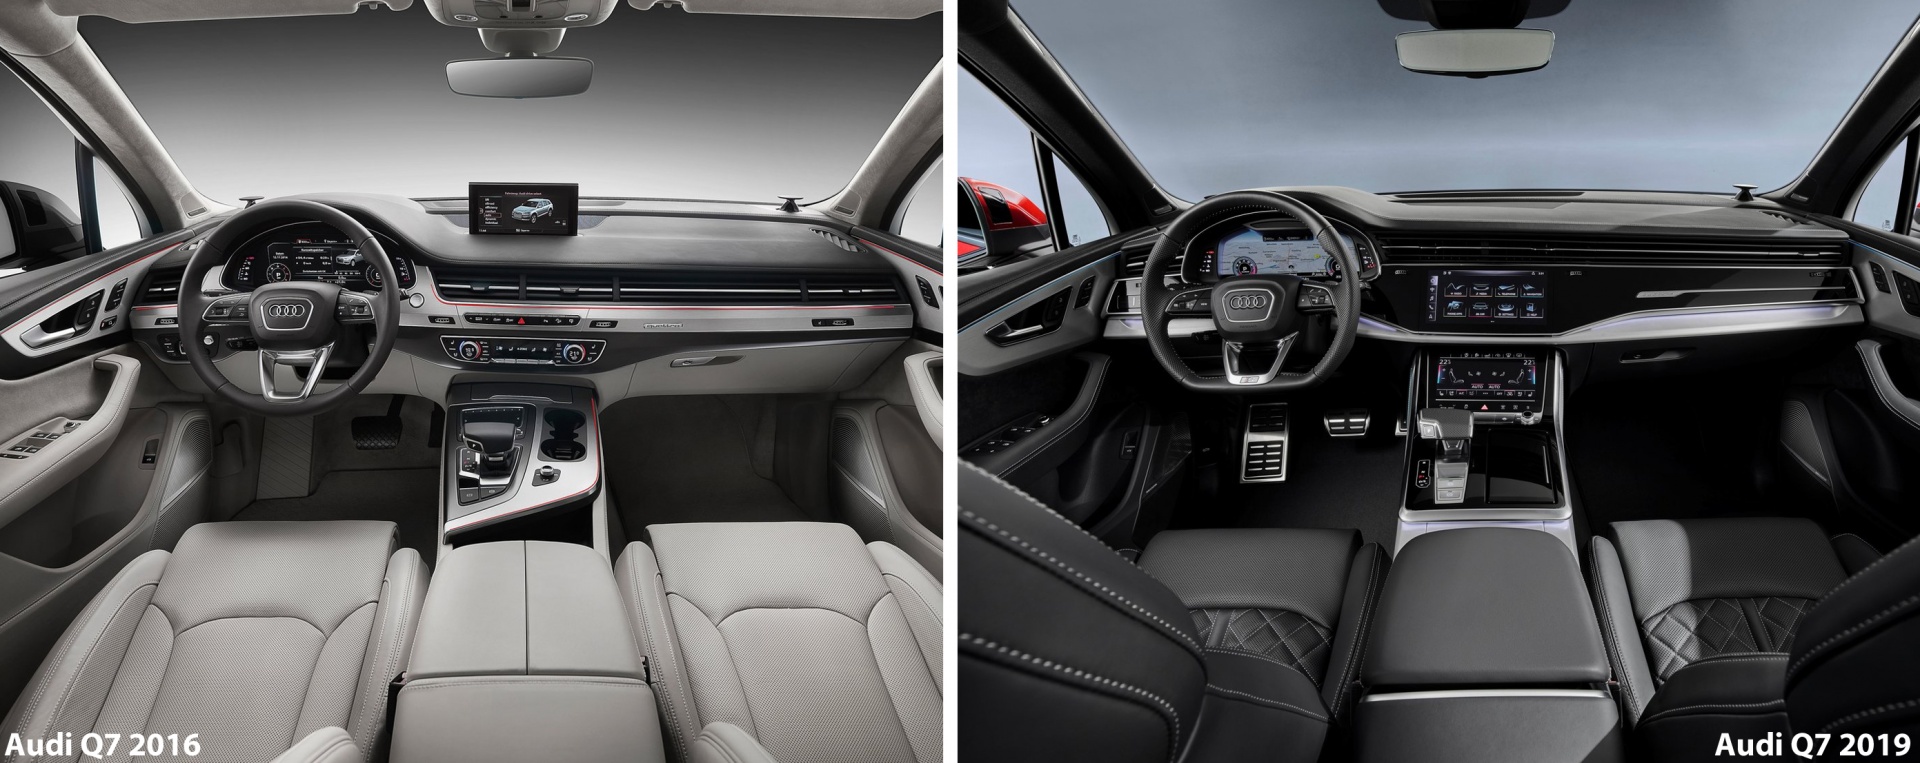 Обновлённый Audi Q7 2019